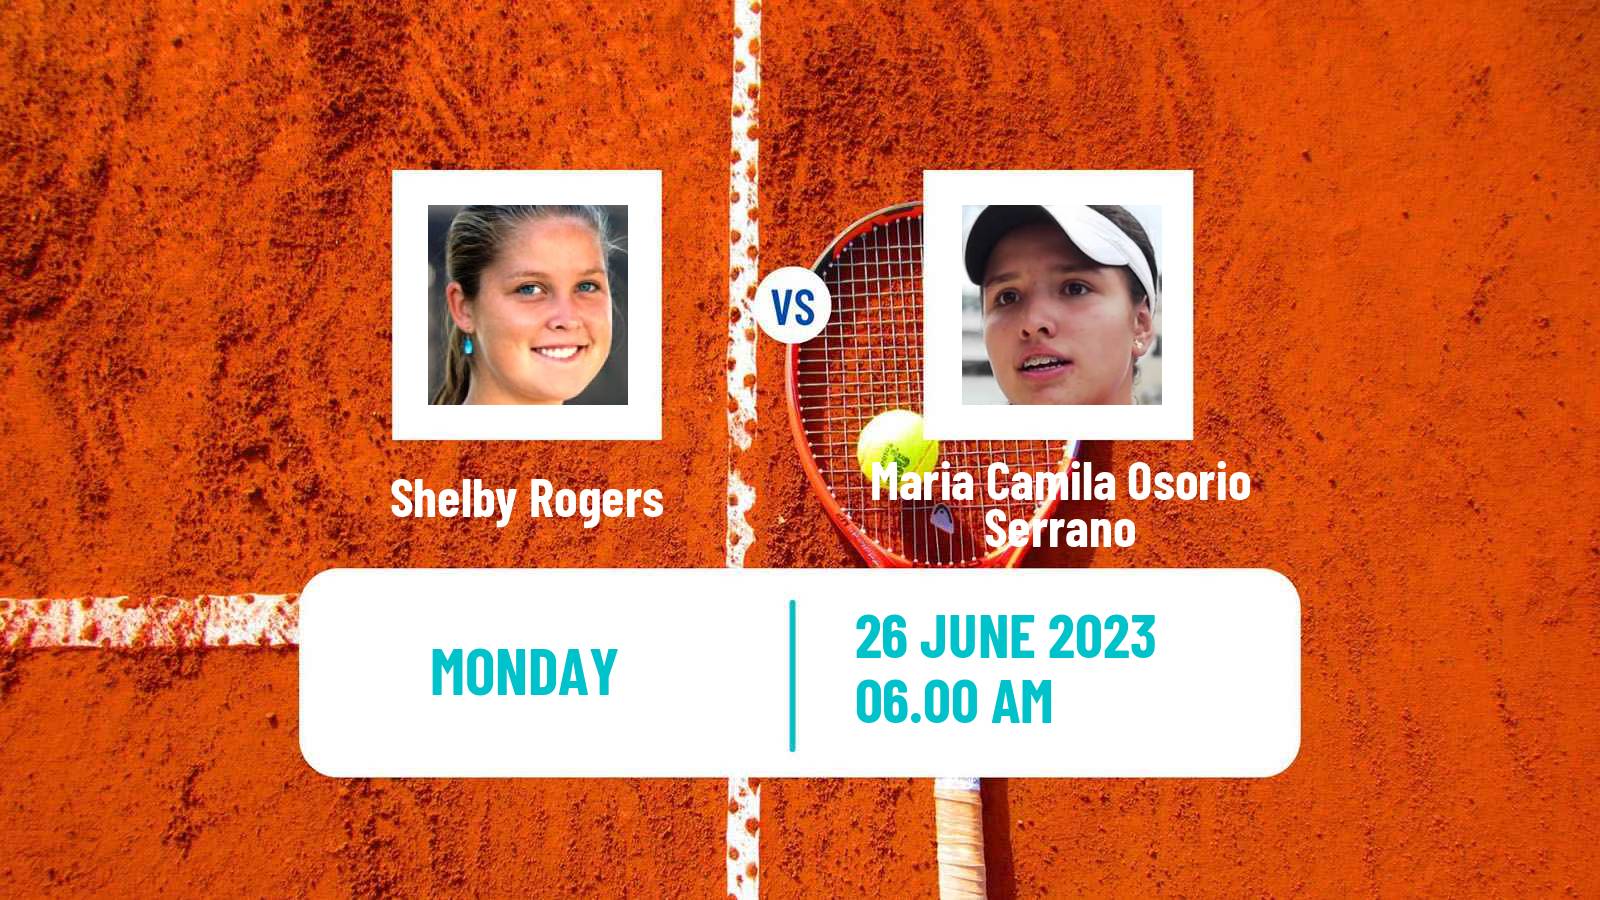 Tennis WTA Eastbourne Shelby Rogers - Maria Camila Osorio Serrano